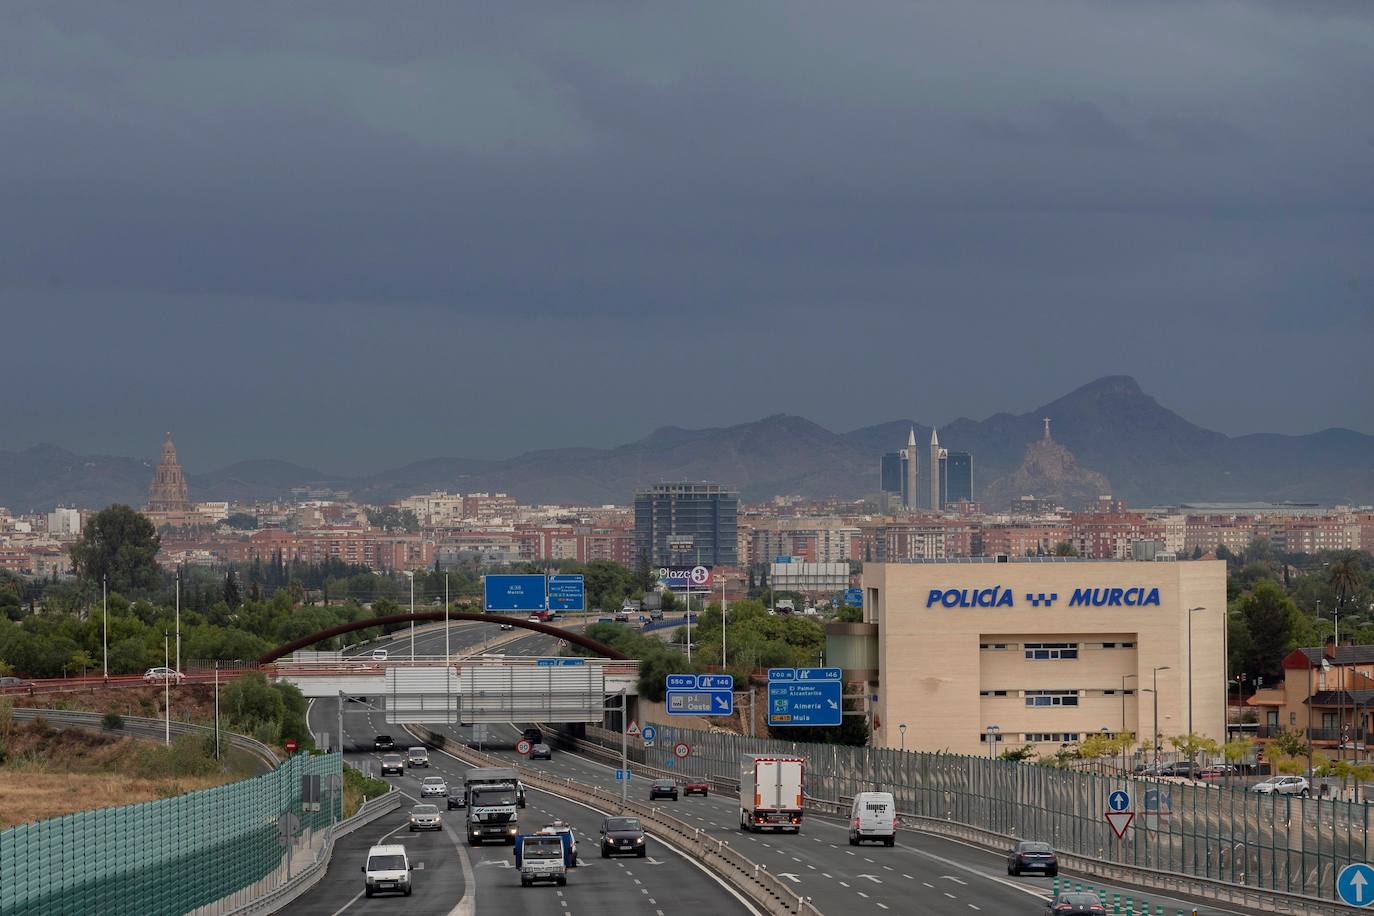 La tormenta se acerca a la ciudad de Murcia.